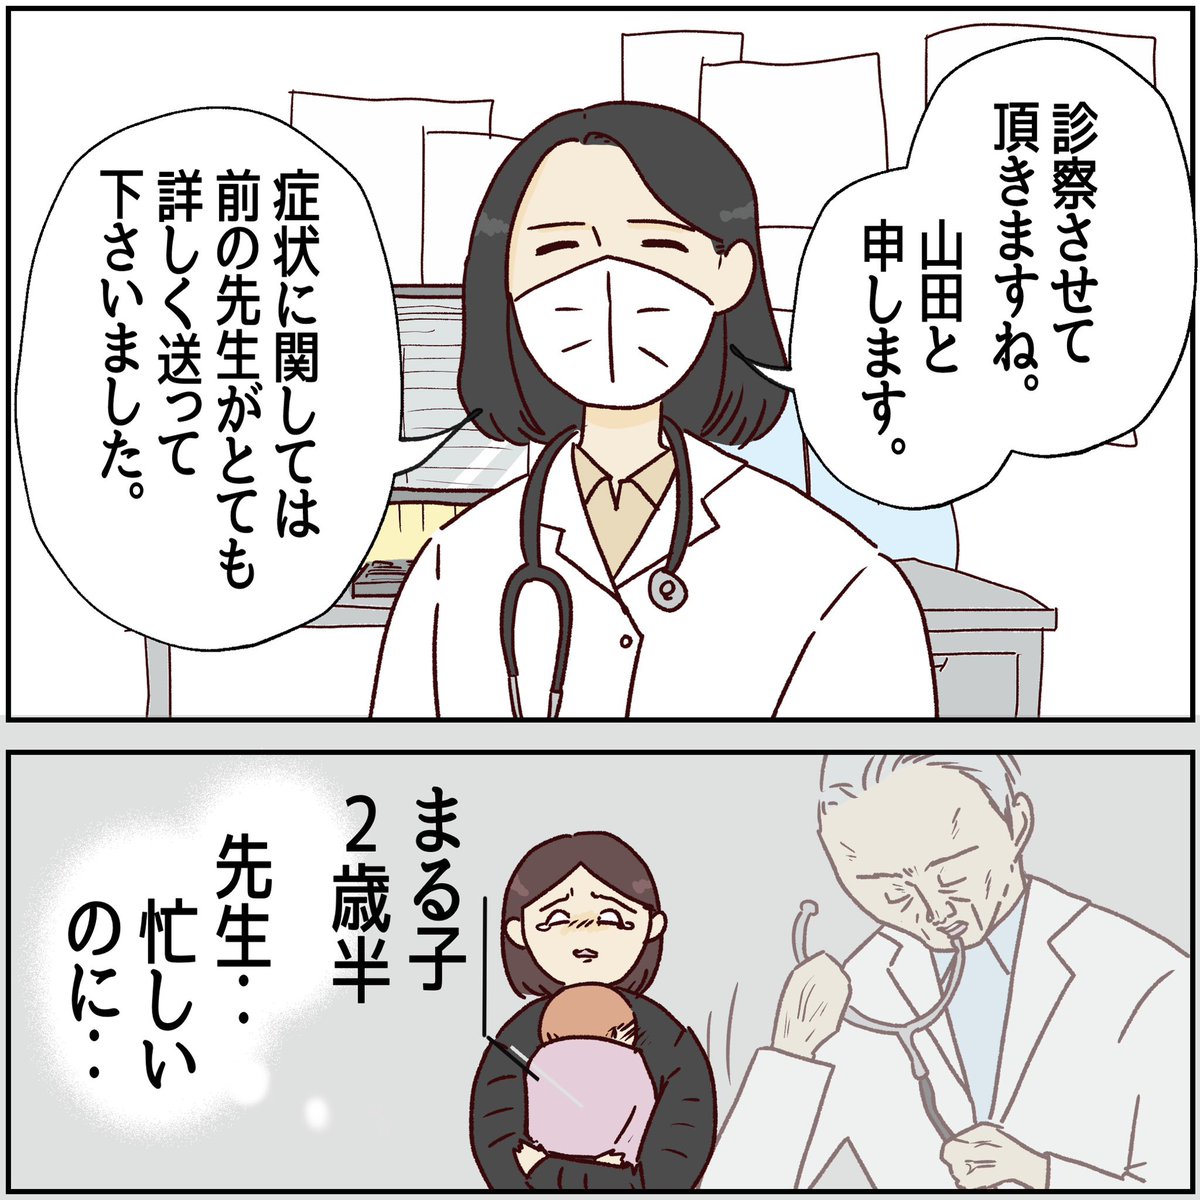 川崎病 手遅れになりかけた話【36】
(1/2)

娘さんはお預かりします。

#川崎病 #エッセイ漫画 